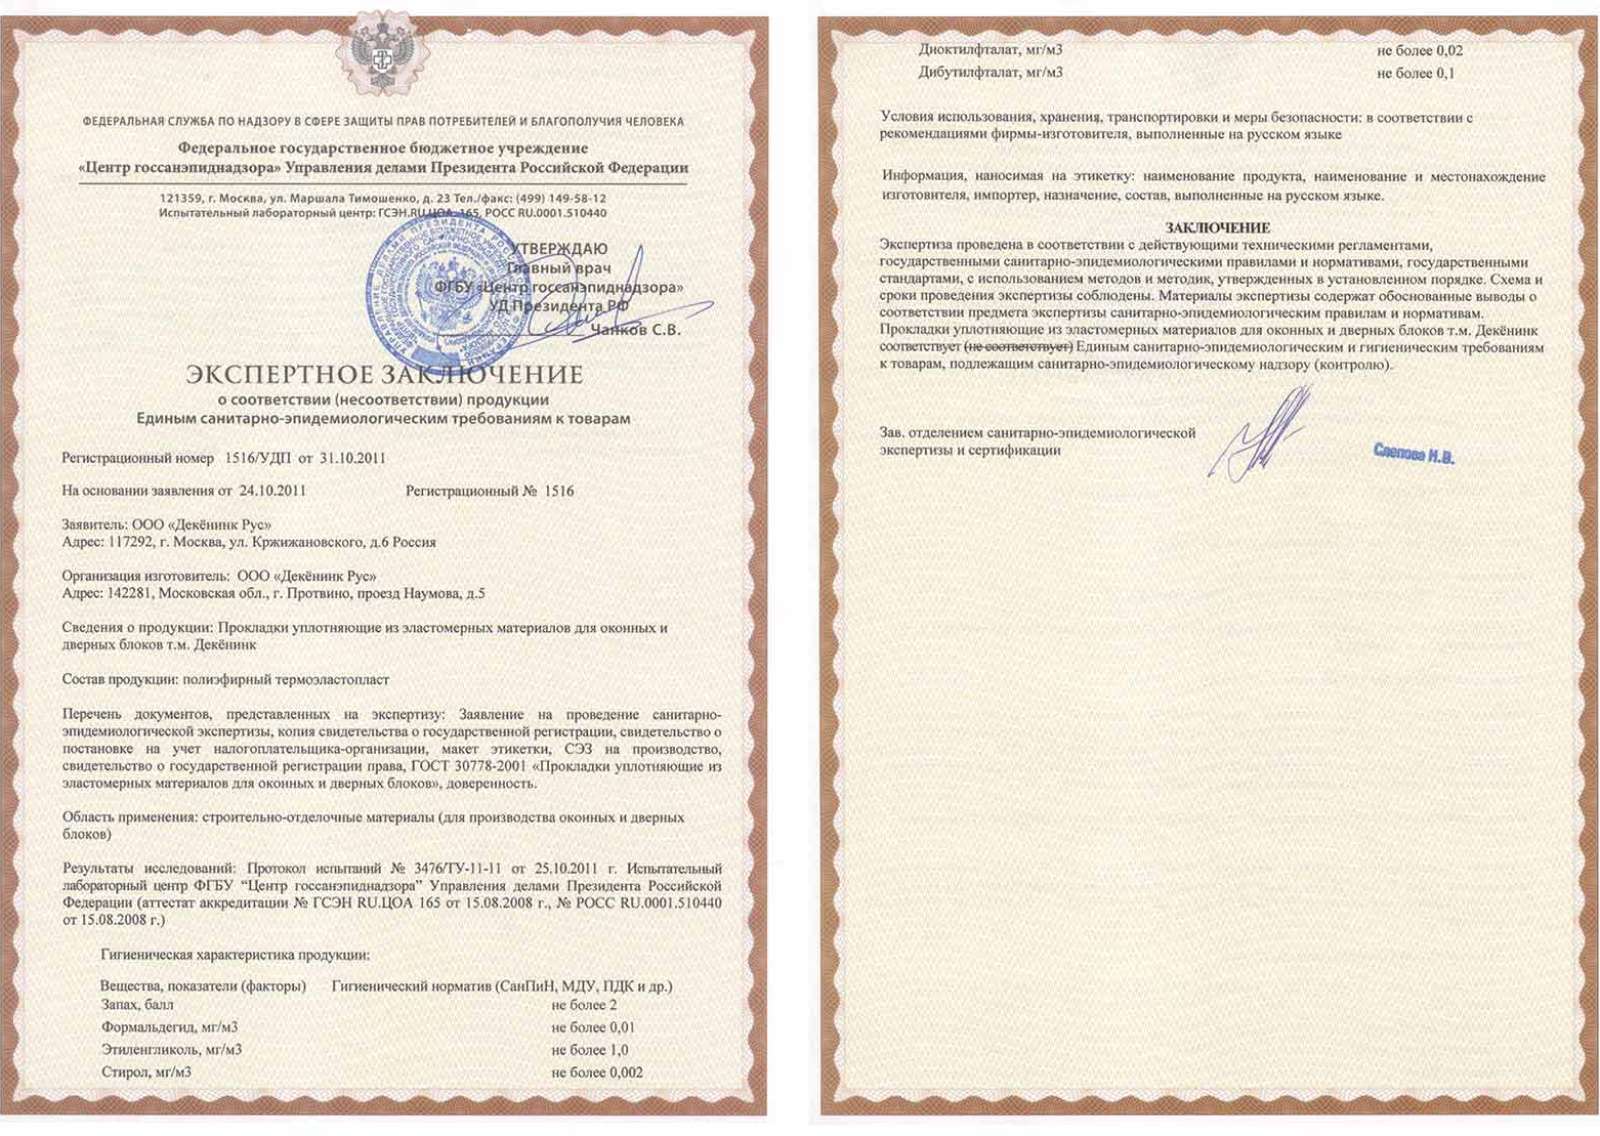 Сертификат соответствия уплотнителя санэпидем требованиям 1516/УДП от 31.10.11